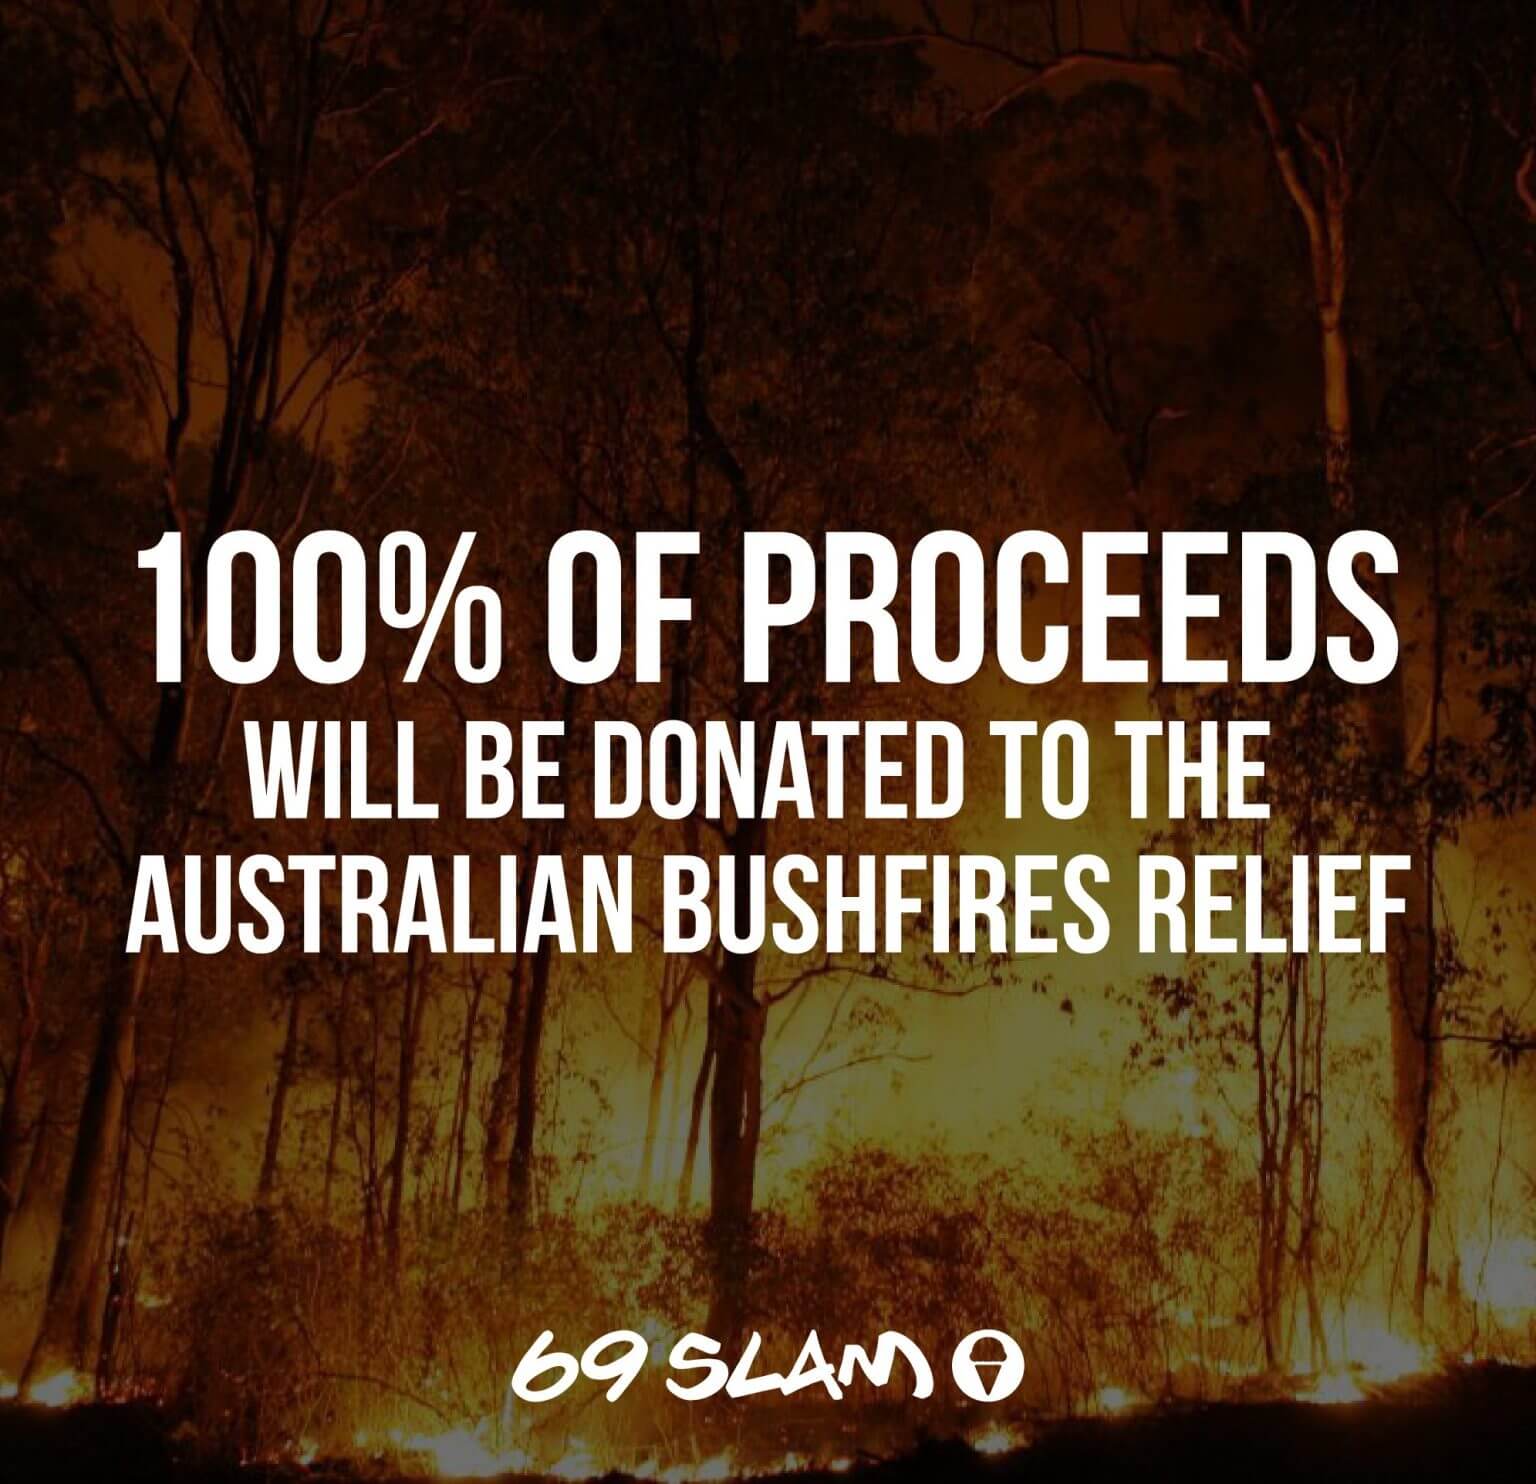 australia day capsule collection for bushfire relief